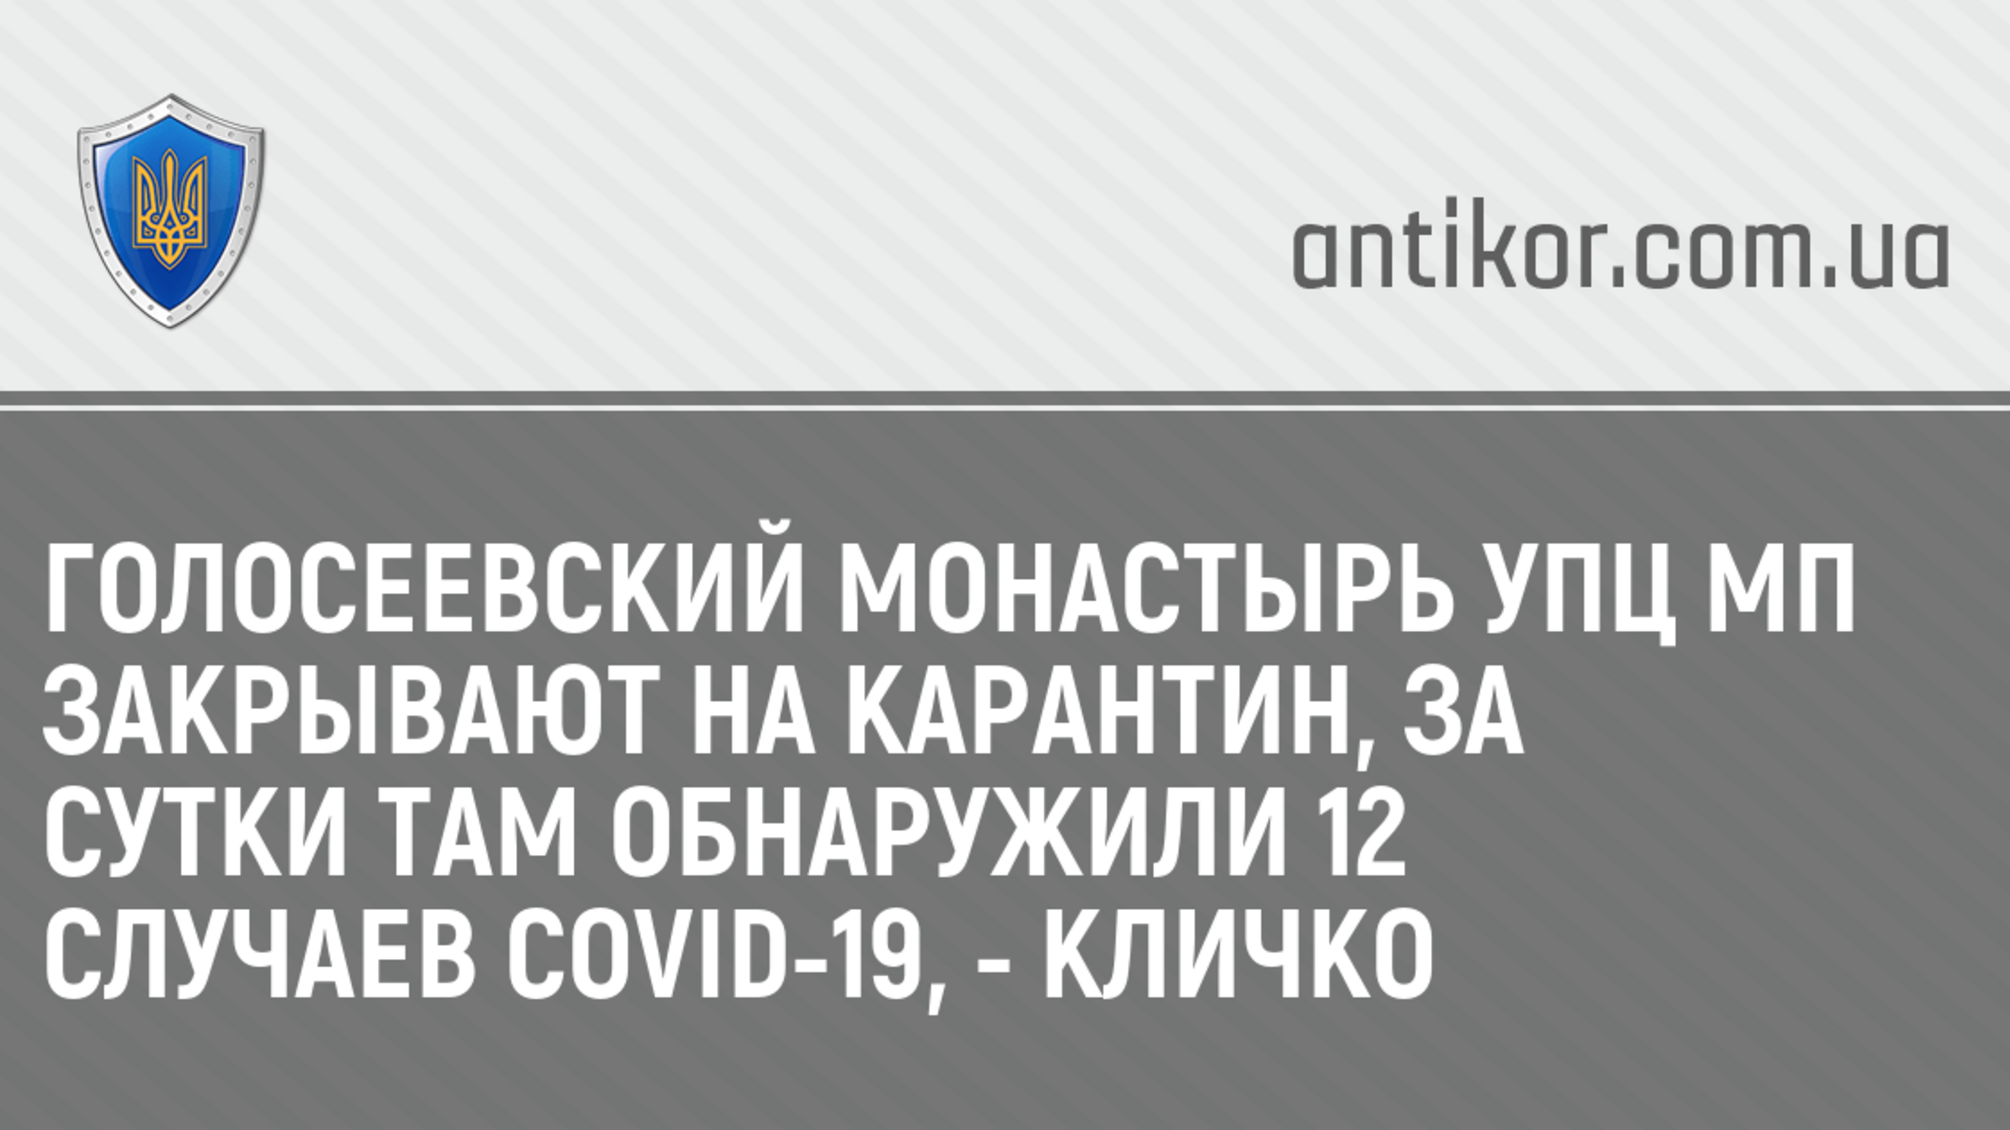 Голосеевский монастырь УПЦ МП закрывают на карантин, за сутки там обнаружили 12 случаев COVID-19, - Кличко